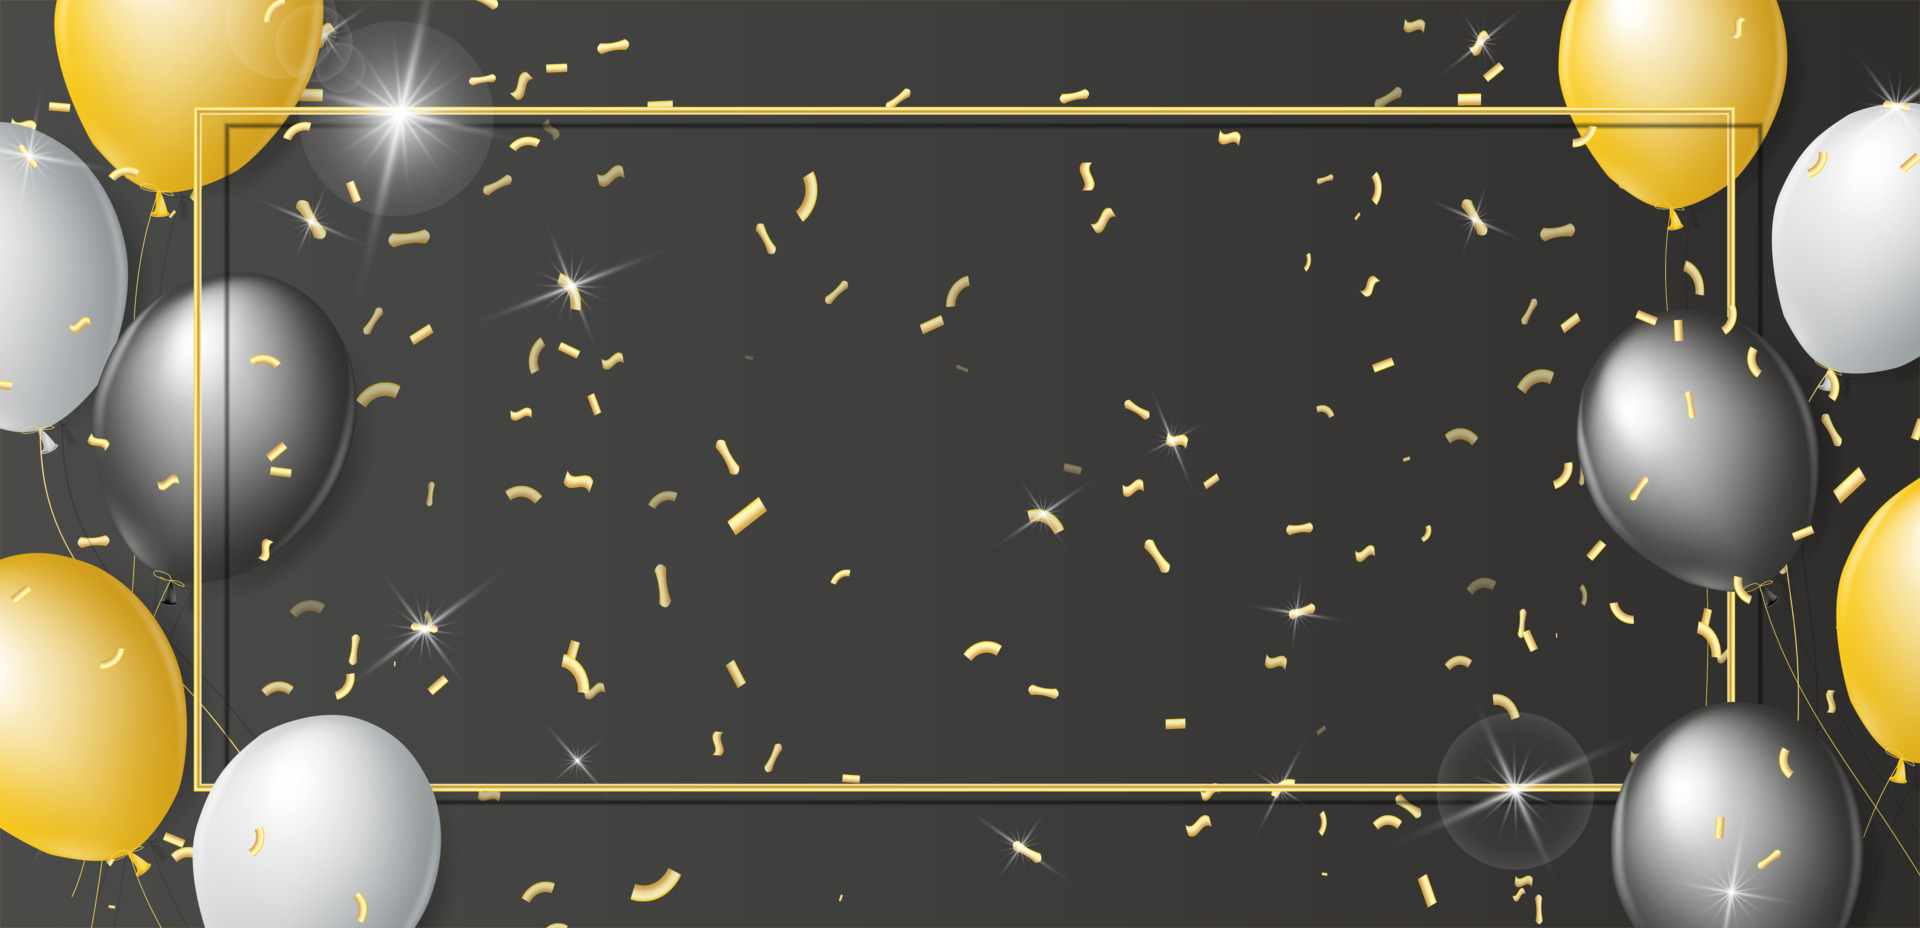 ballons noirs, blancs et or sur fond noir. cadre doré avec des ballons 3d  réalistes et des confettis avec des paillettes dorées. place pour votre  texte. modèle de carte postale, invitation, bannière.